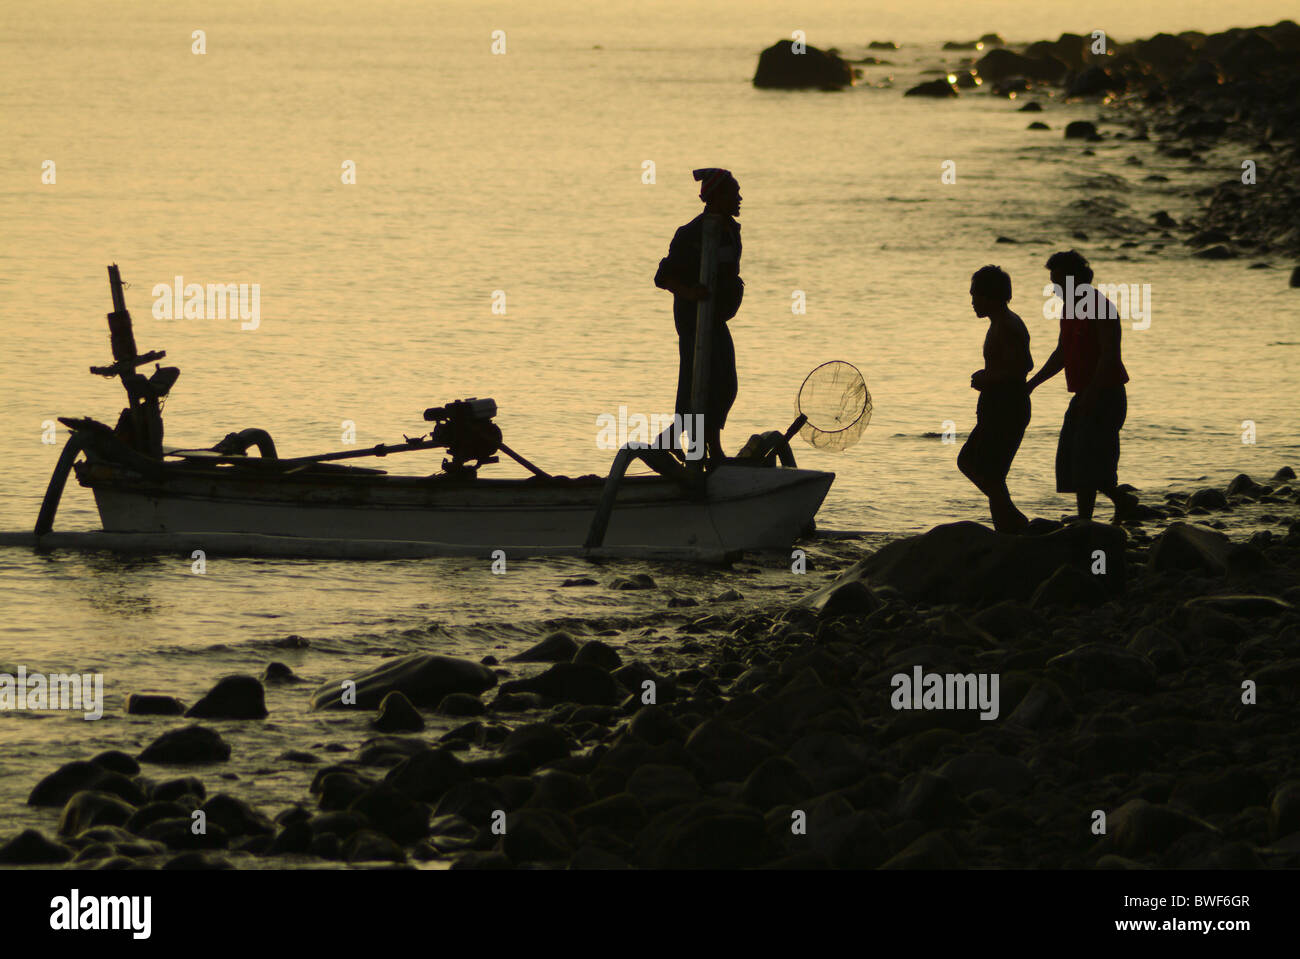 Im Dorf Tejakula, Bali, die Fischer kommen ans Ufer bei Sonnenaufgang, ihren Fang entladen. Familie kommt mit der Arbeit zu helfen. Stockfoto